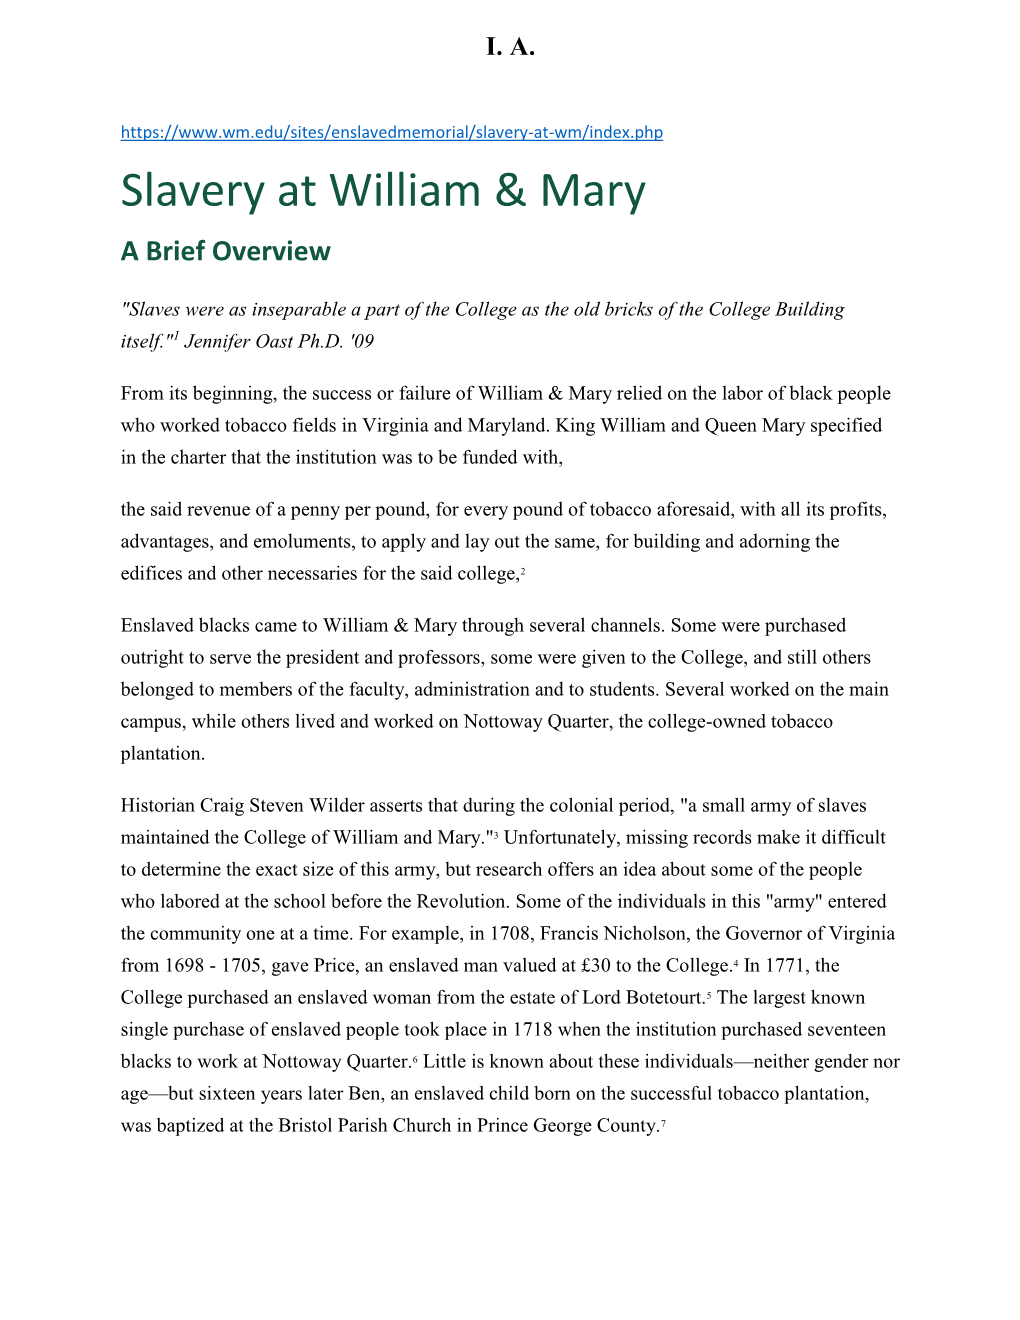 Slavery at William & Mary